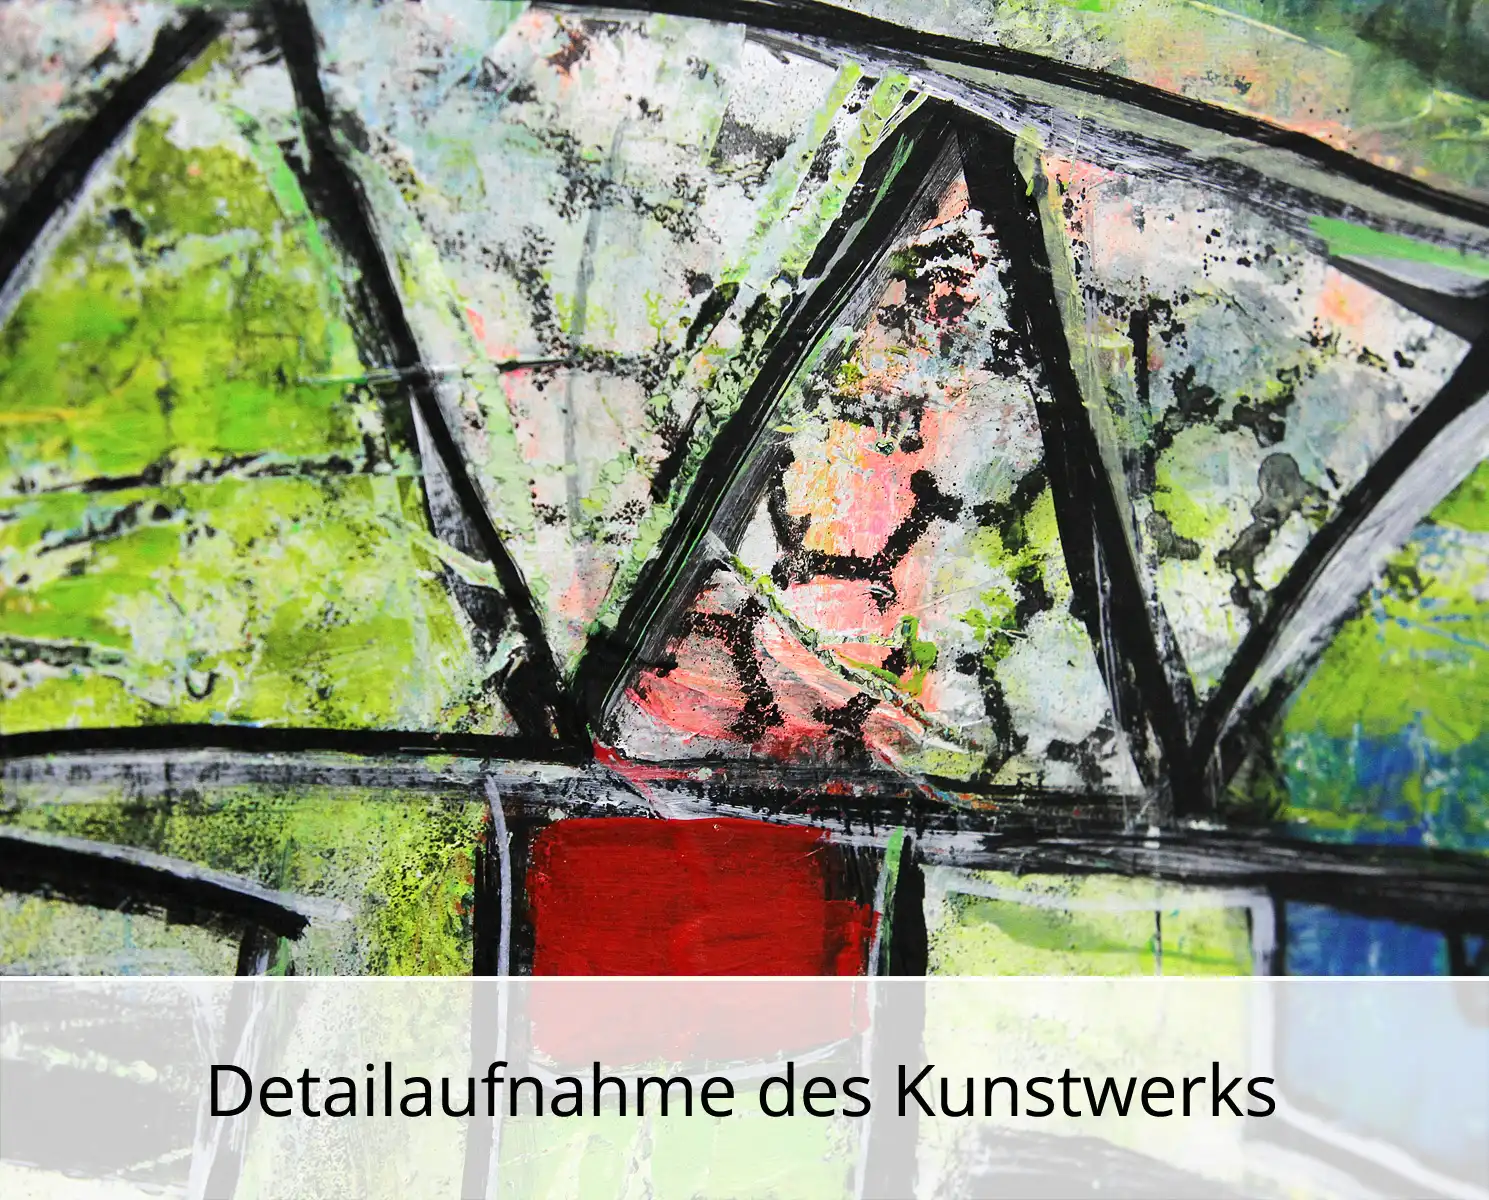 I. Schmidt: "Wenn die Stadt erzählt... Werk Nr. 11", zeitgenössische Grafik/Malerei, Original/Unikat